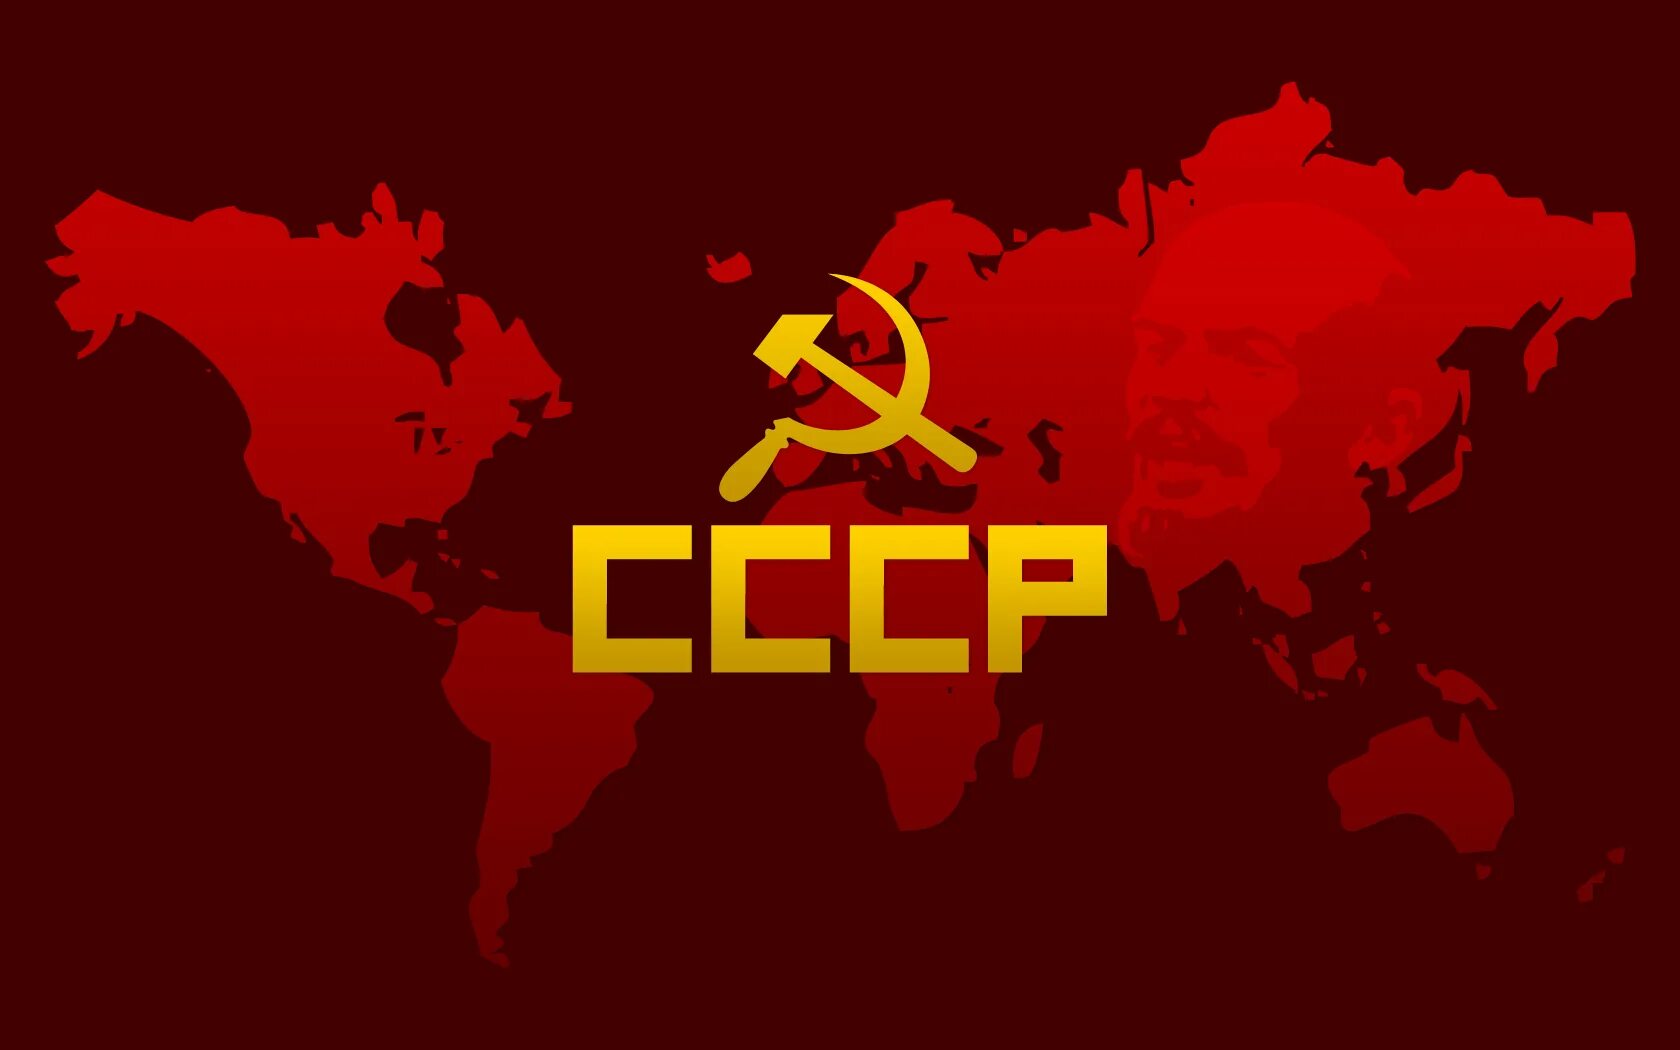 Ссср 2. Советский Союз. Весь мир Советский Союз. Флаг СССР 2.0. Всемирный коммунизм.